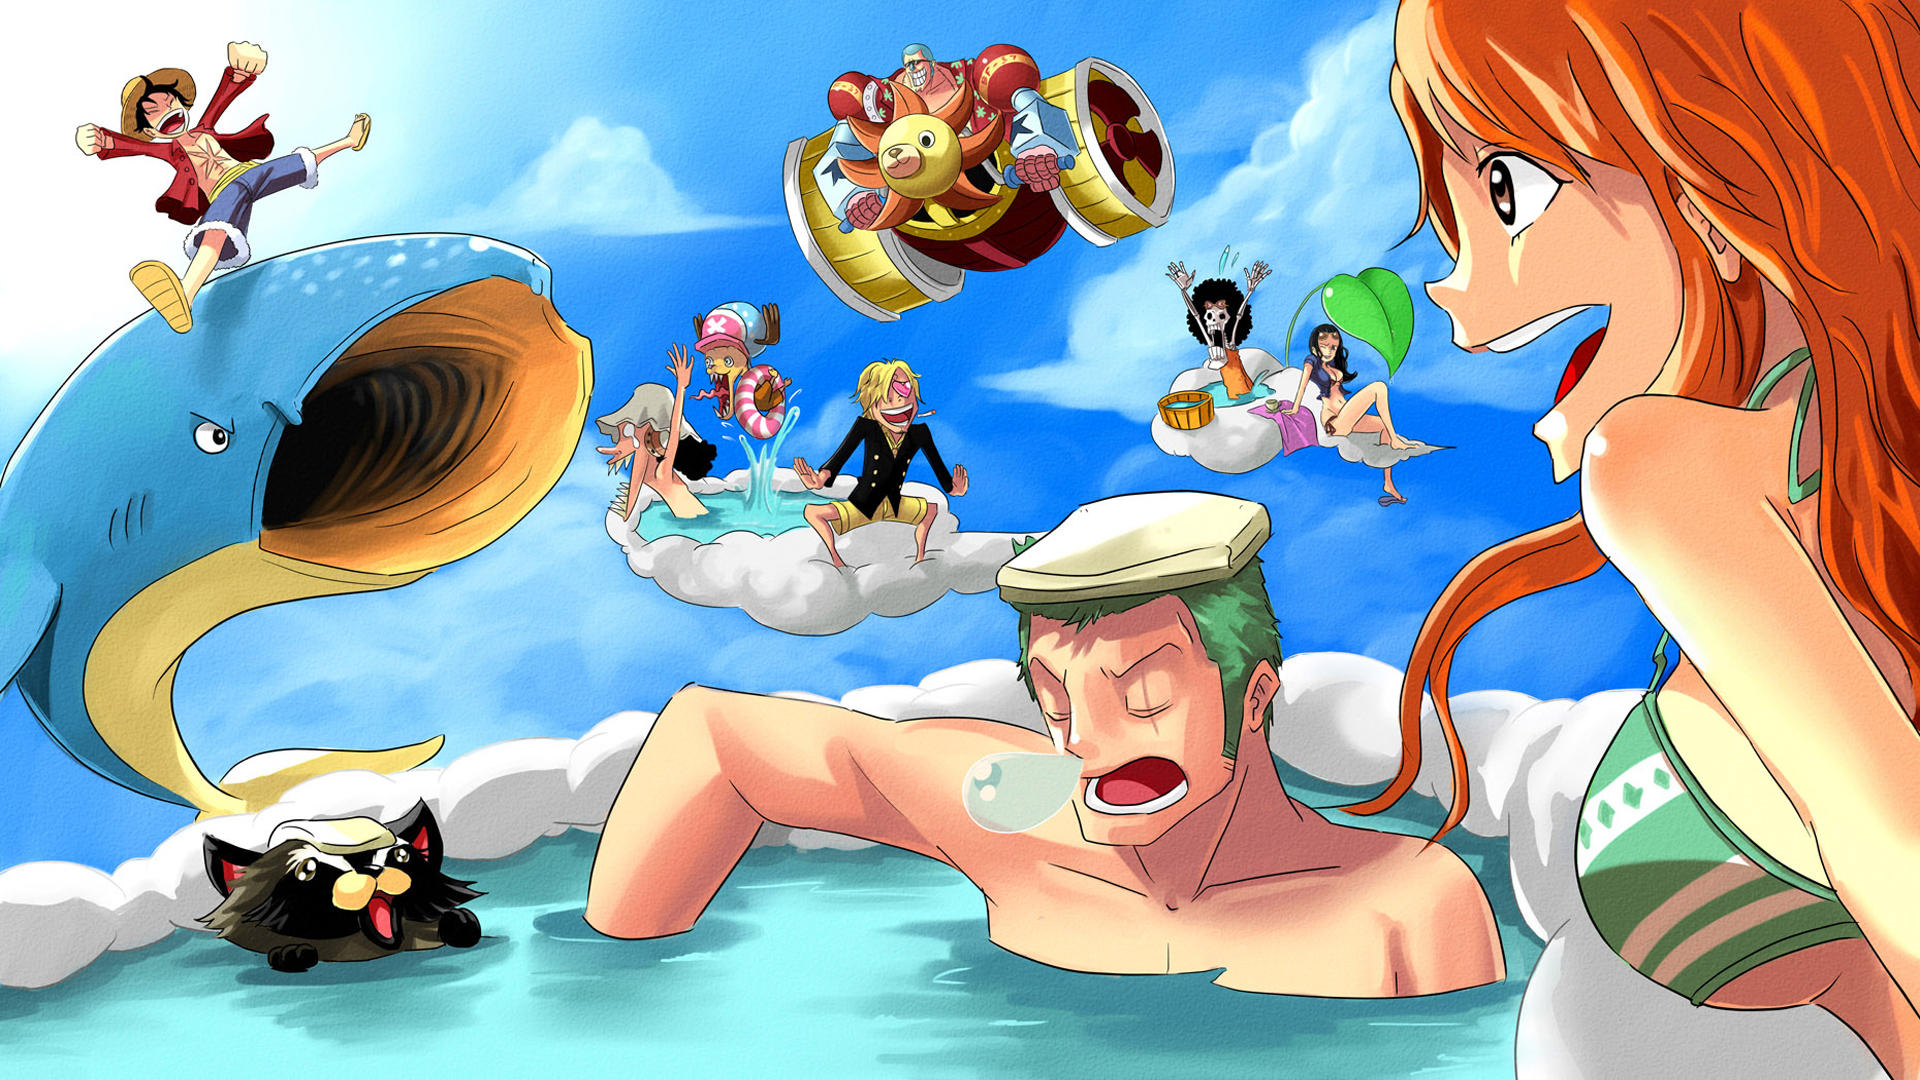 Nhân vật nữ trong One Piece: Tổng hợp hình ảnh đầy đủ và chính xác nhất!